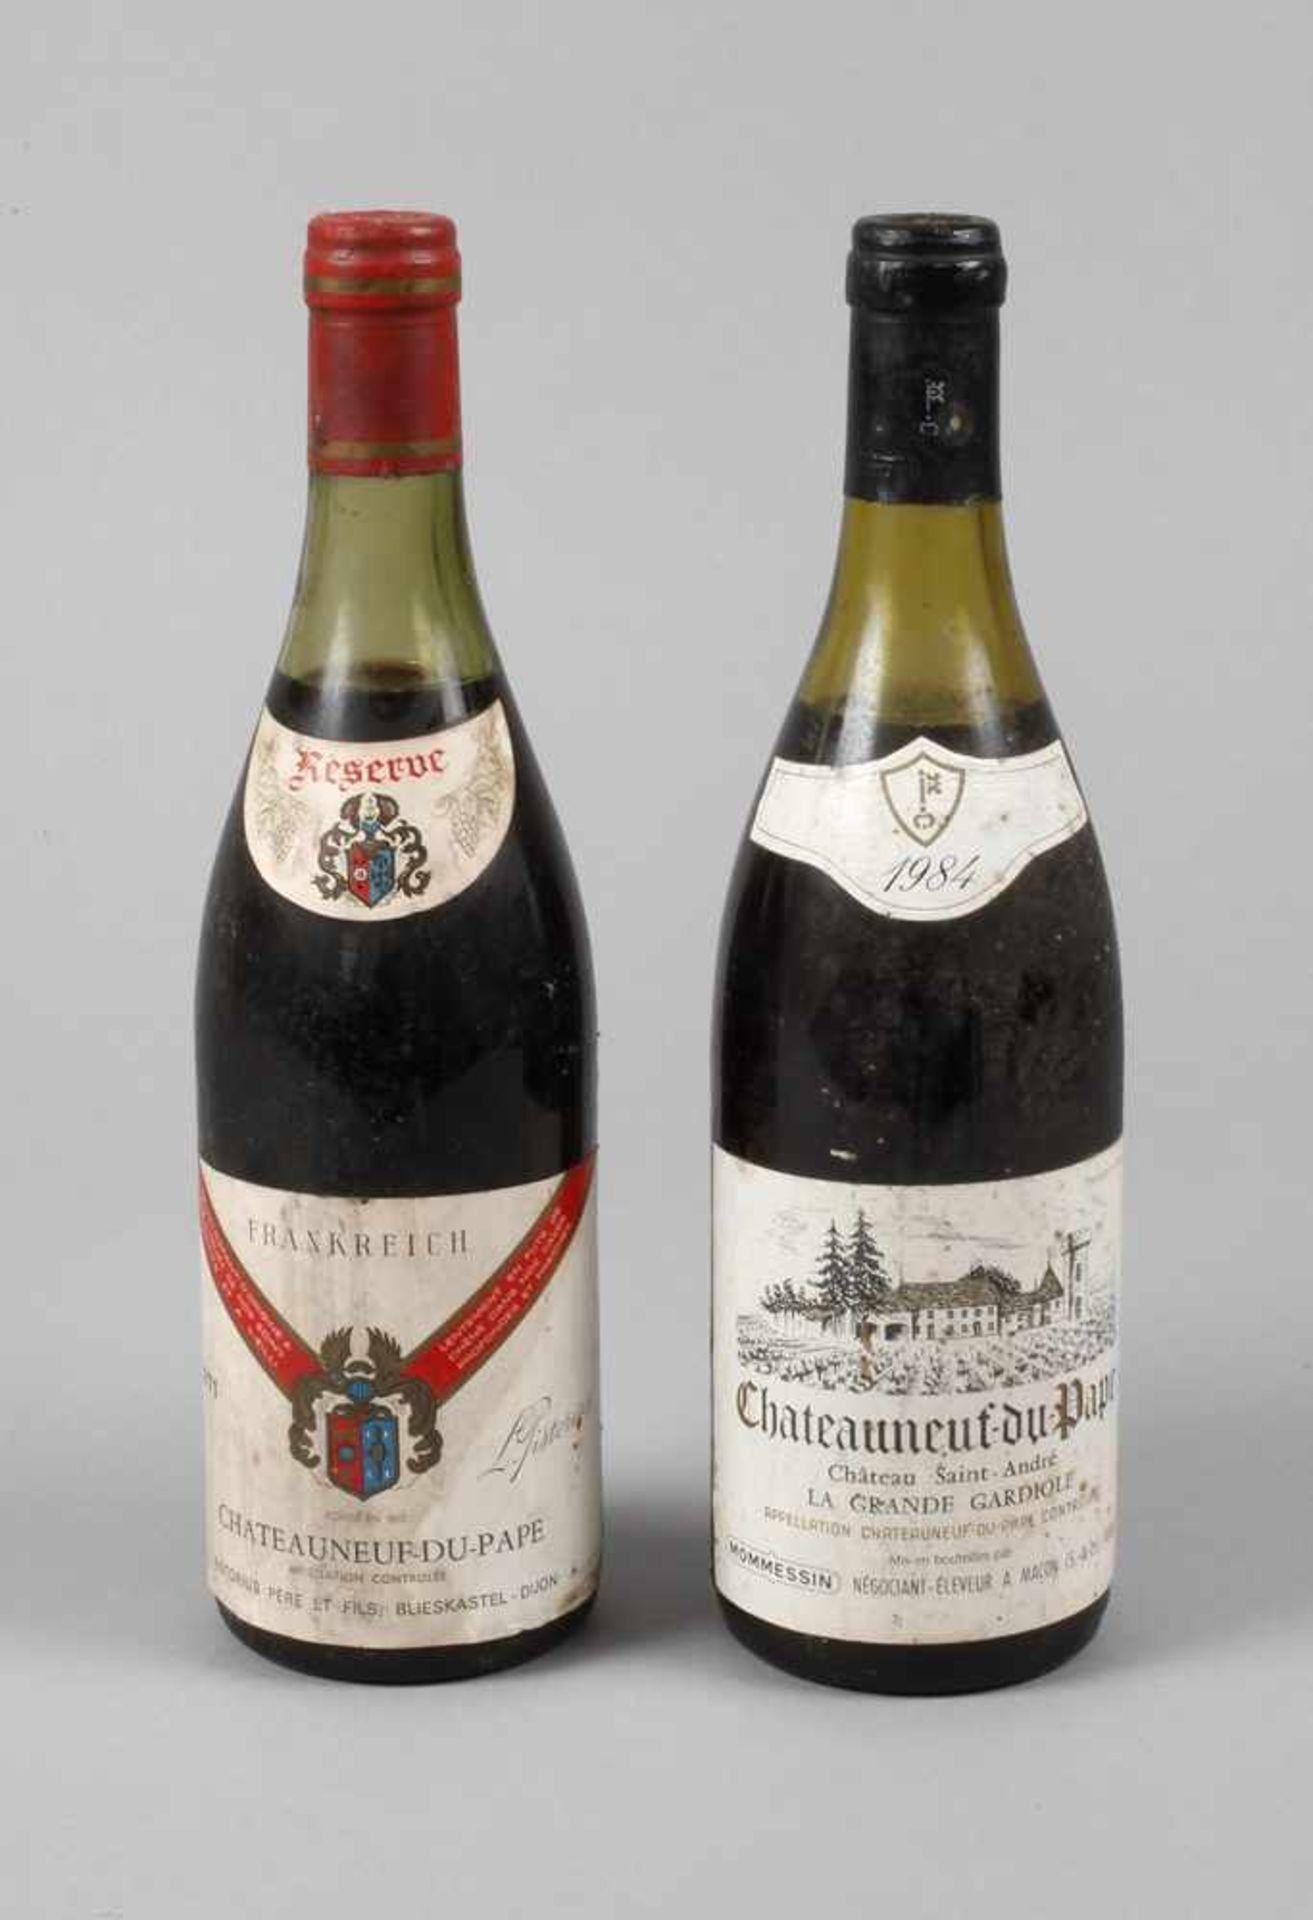 Zwei Flaschen RotweinFrankreich, Chateauneuf-du-Pape 1971, Pistorius Père et Fils Blies Castle